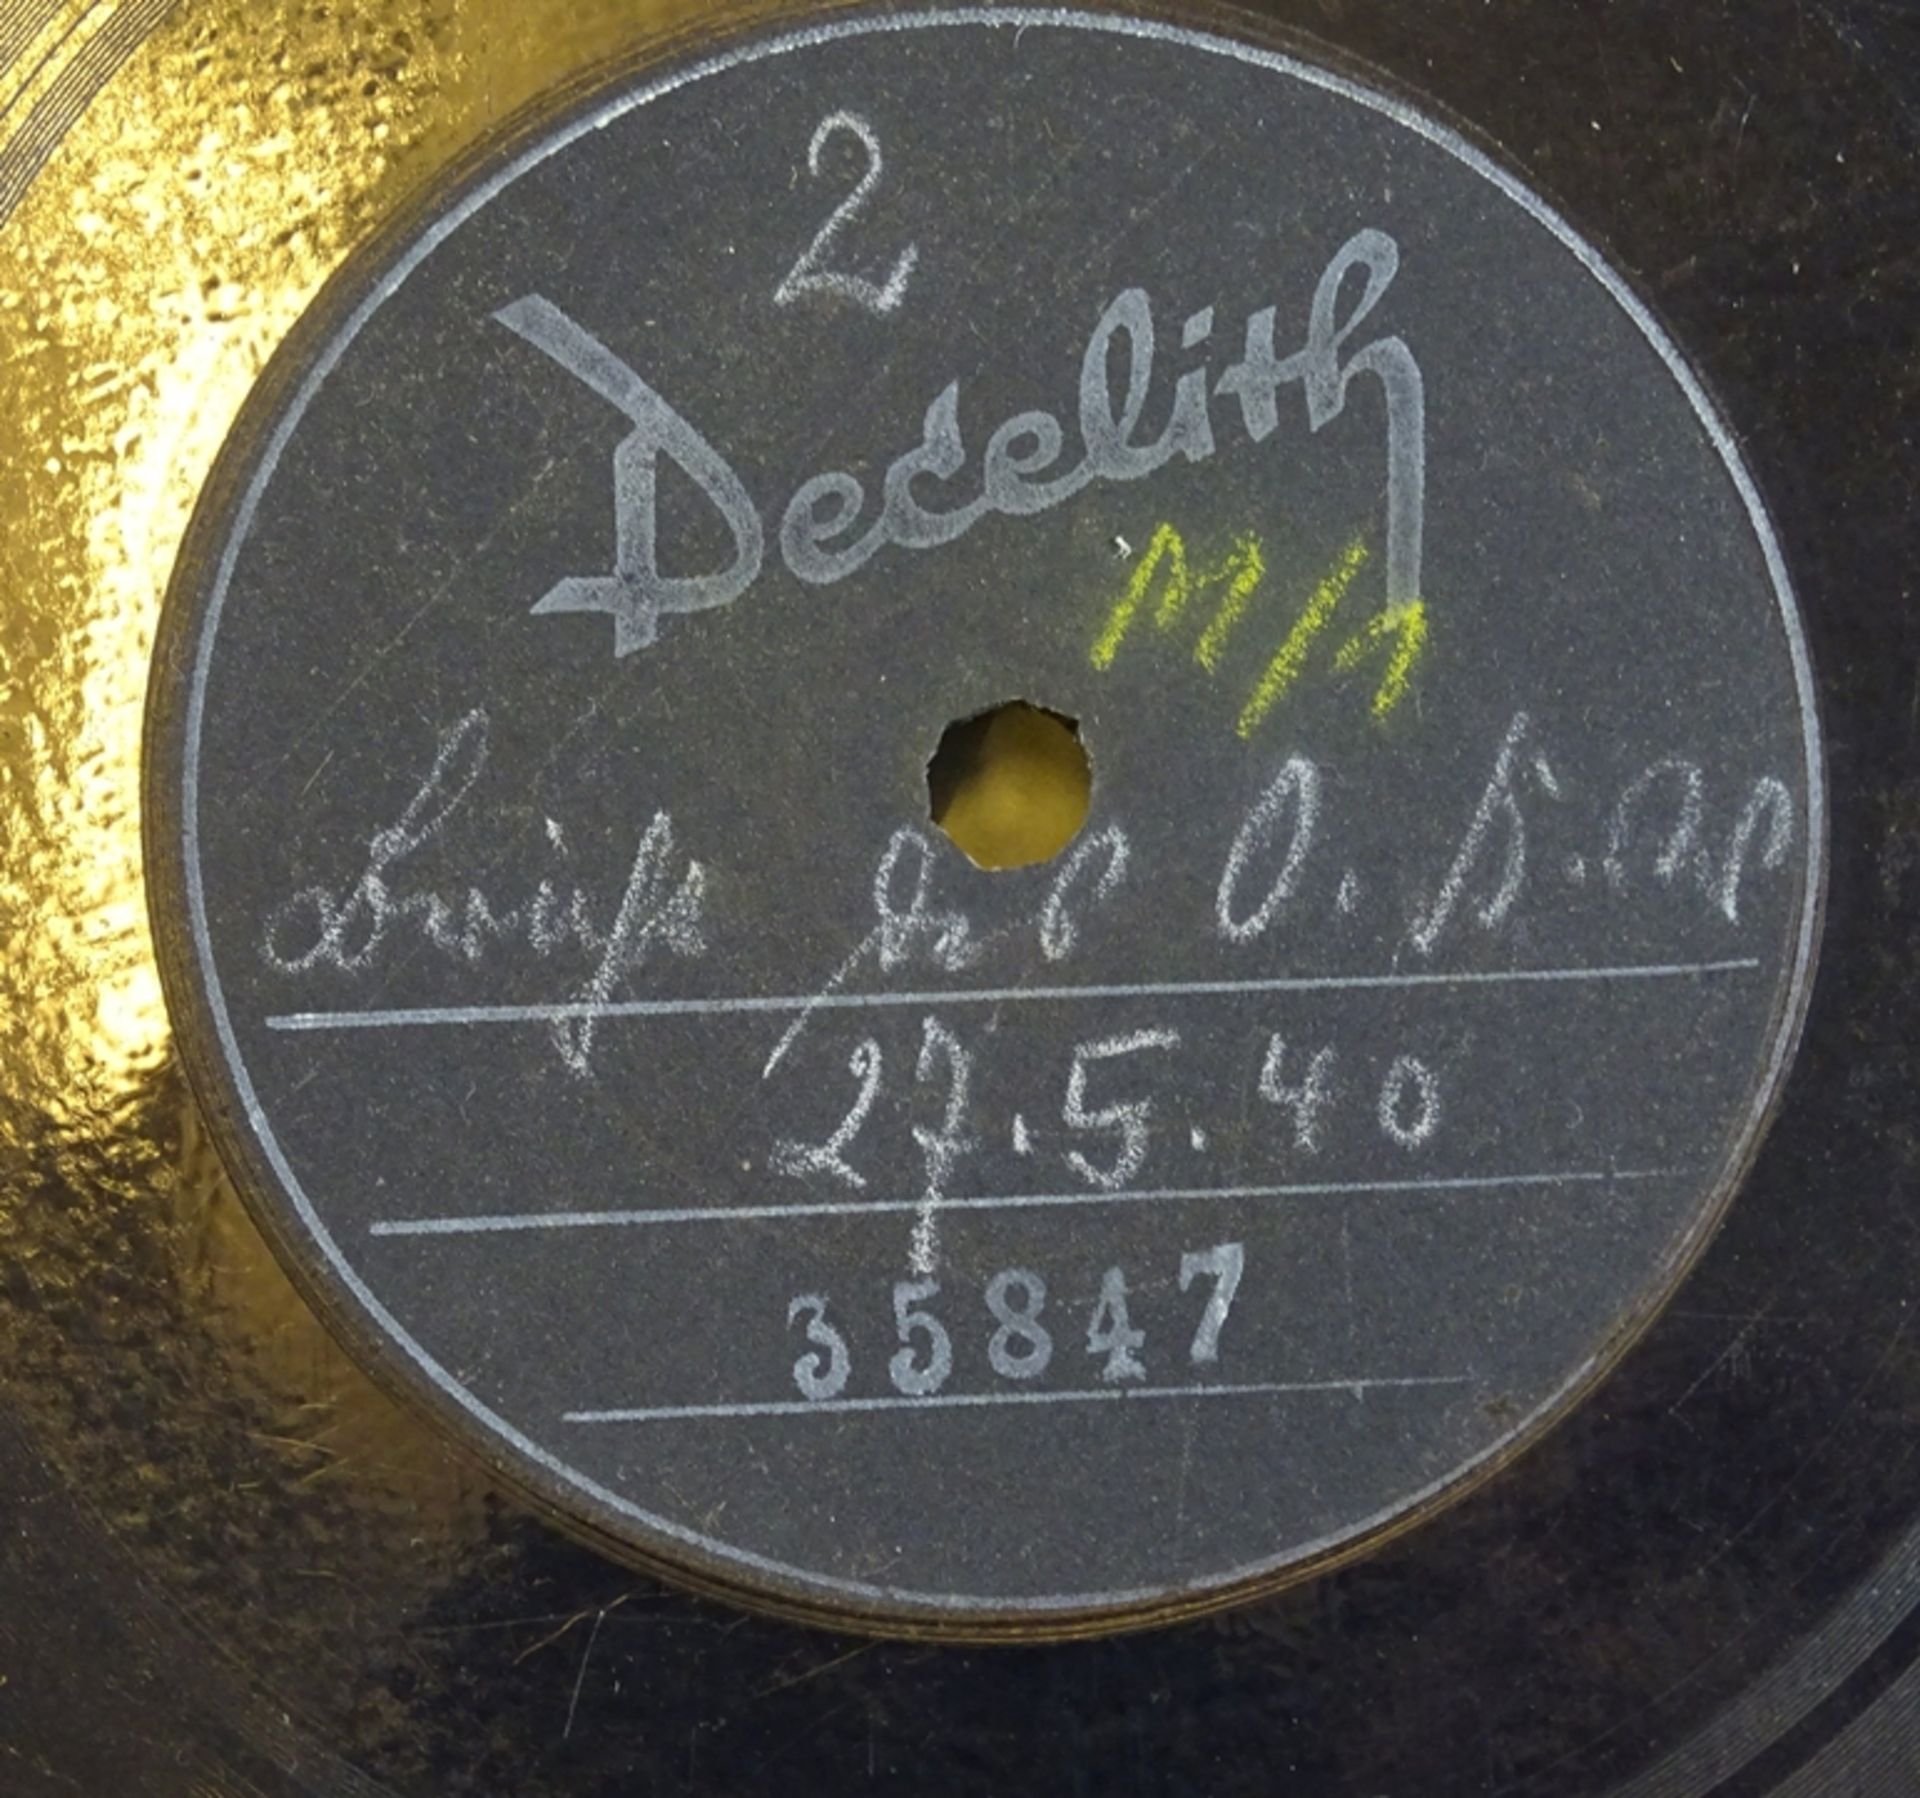 Wehrmacht 3 Schallplatten besprochene Feldpostbriefe als OKW Berichte um die Truppe über die Lage z - Image 4 of 5